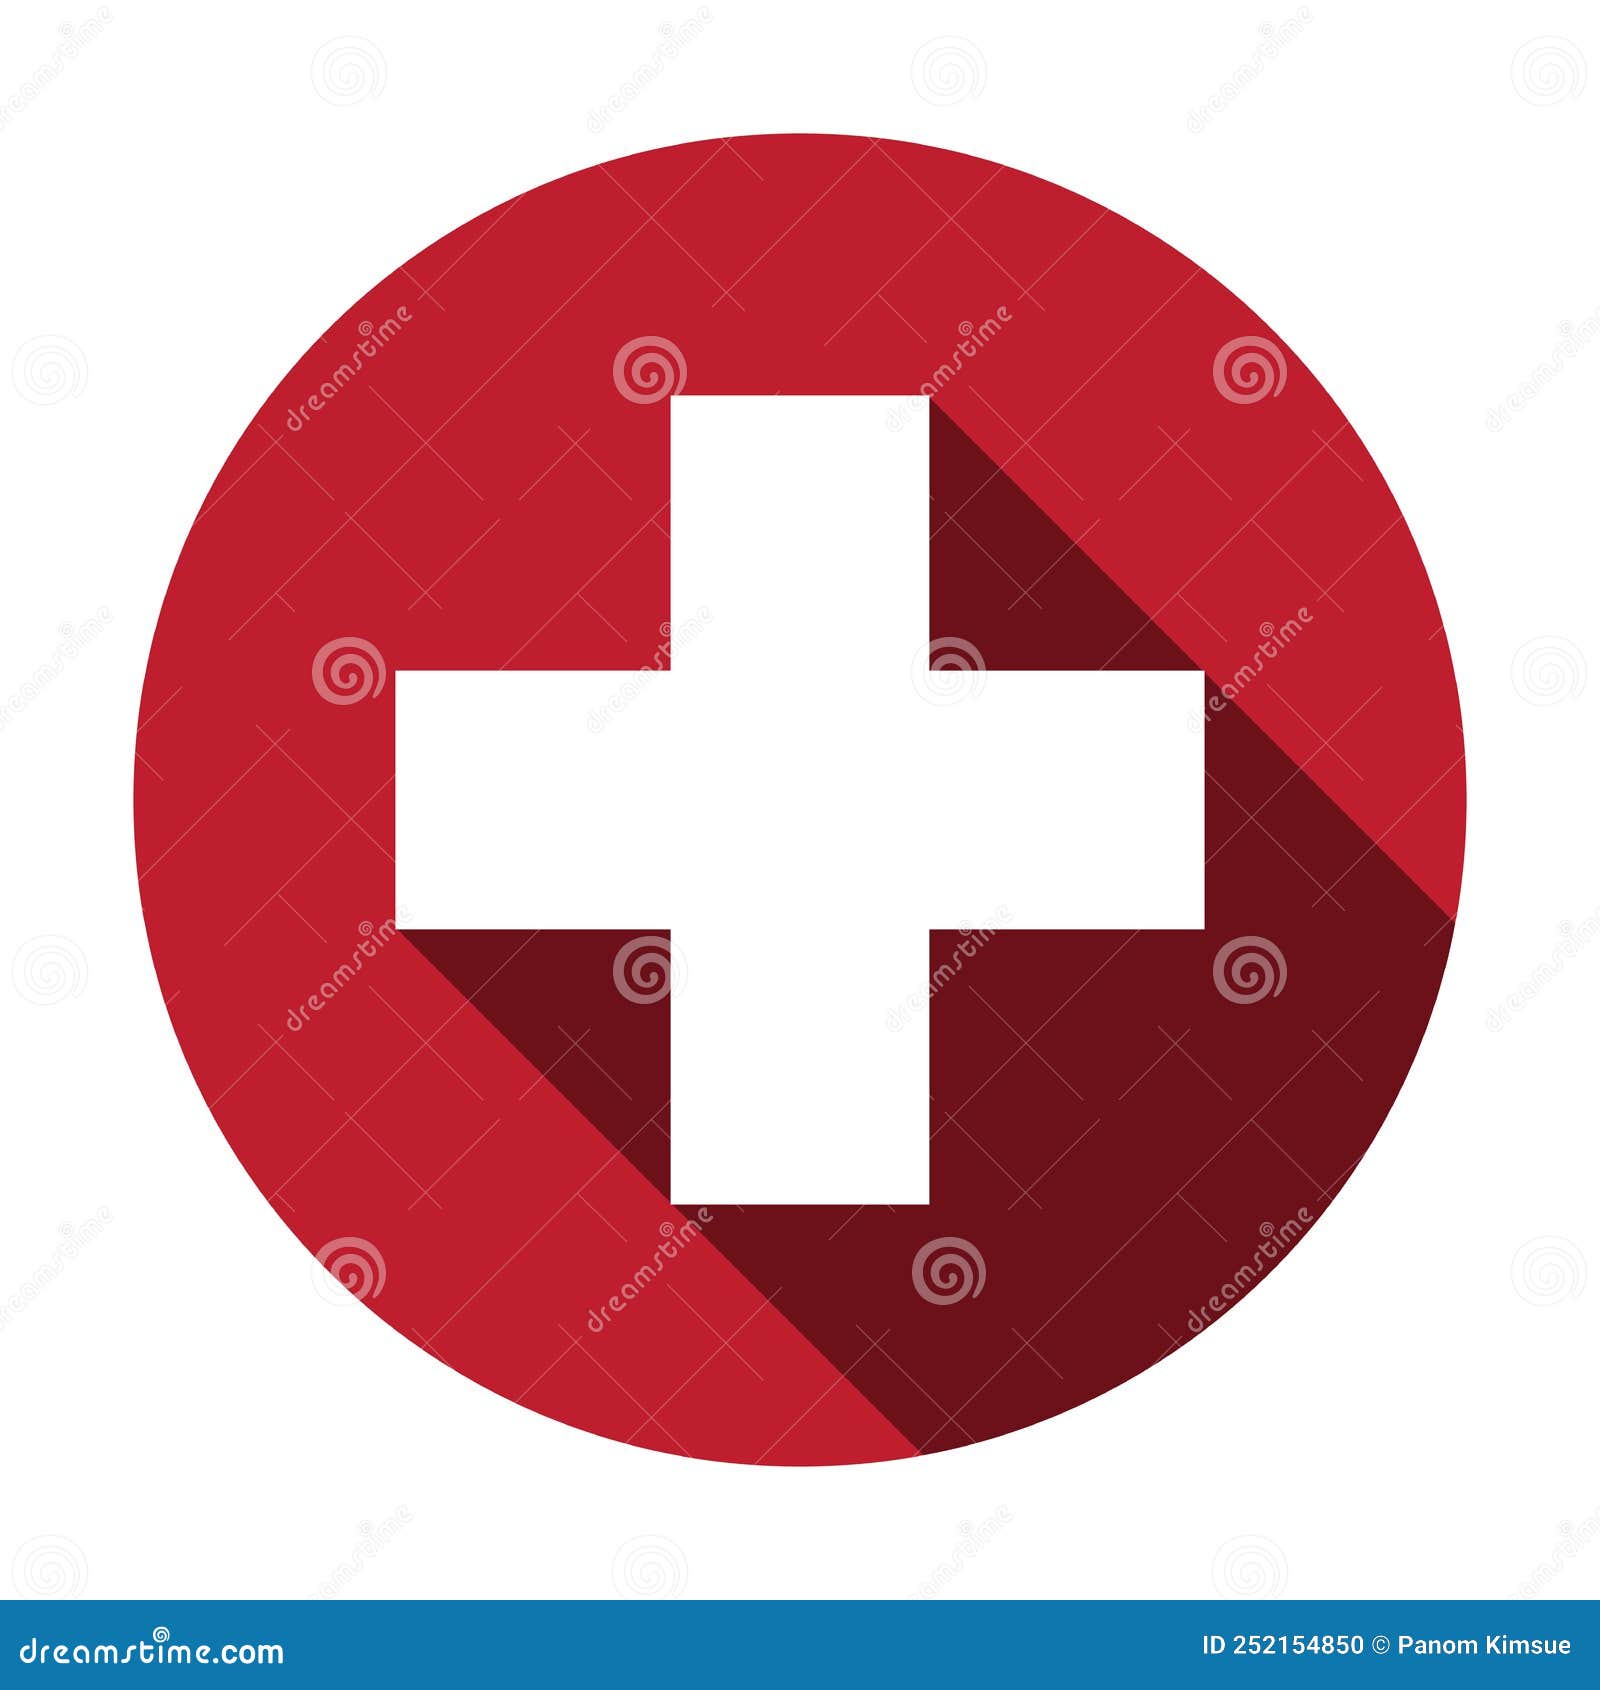 Biểu tượng Swiss Cross Icon mang trong mình sắc thái của nghệ thuật Thiên nhiên, tạo nên một phong cách độc đáo. Cùng đắm chìm trong không gian tuyệt vời của hình ảnh và thưởng thức sự đẹp của Swiss Cross Icon.